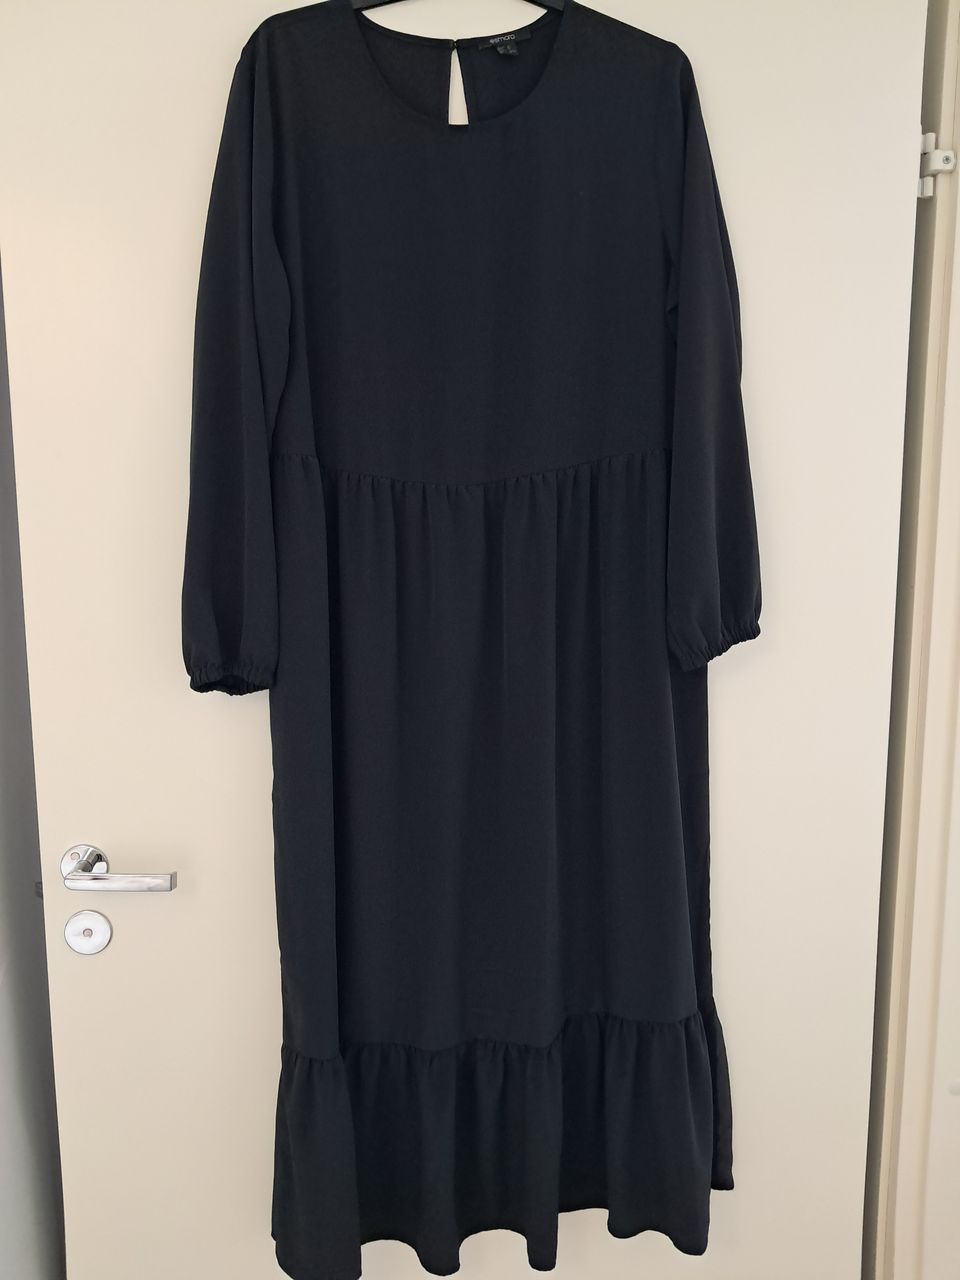 Musta mekko, koko 42